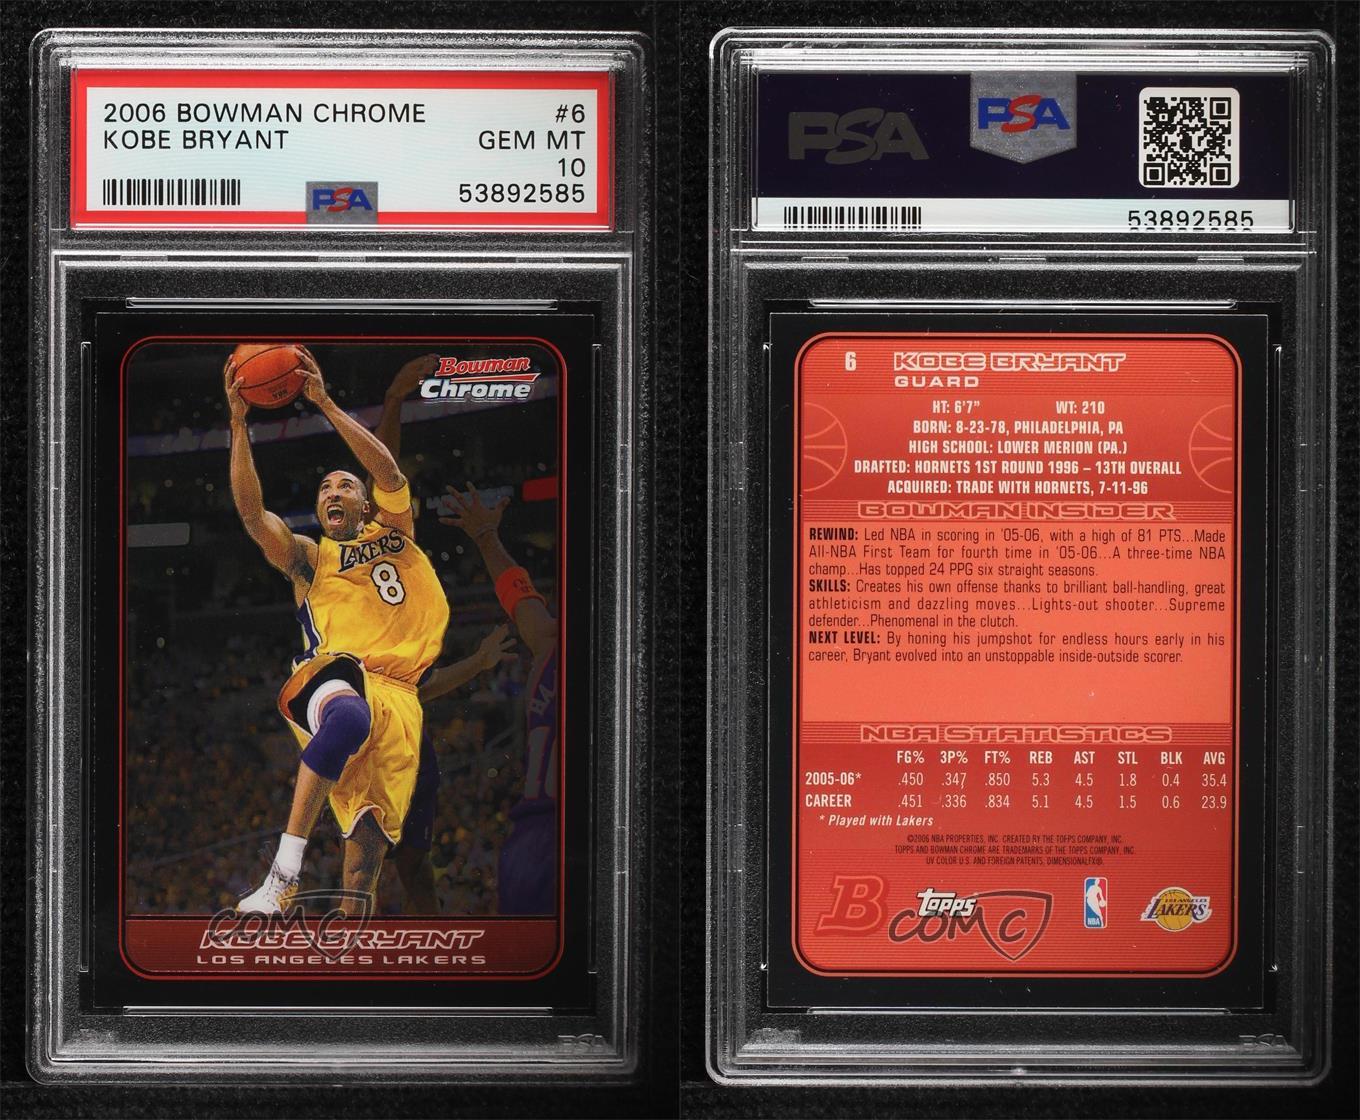 2006-07 Bowman Draft Picks & Stars Chrome #6 Kobe Bryant Los Angeles Lakers Card 